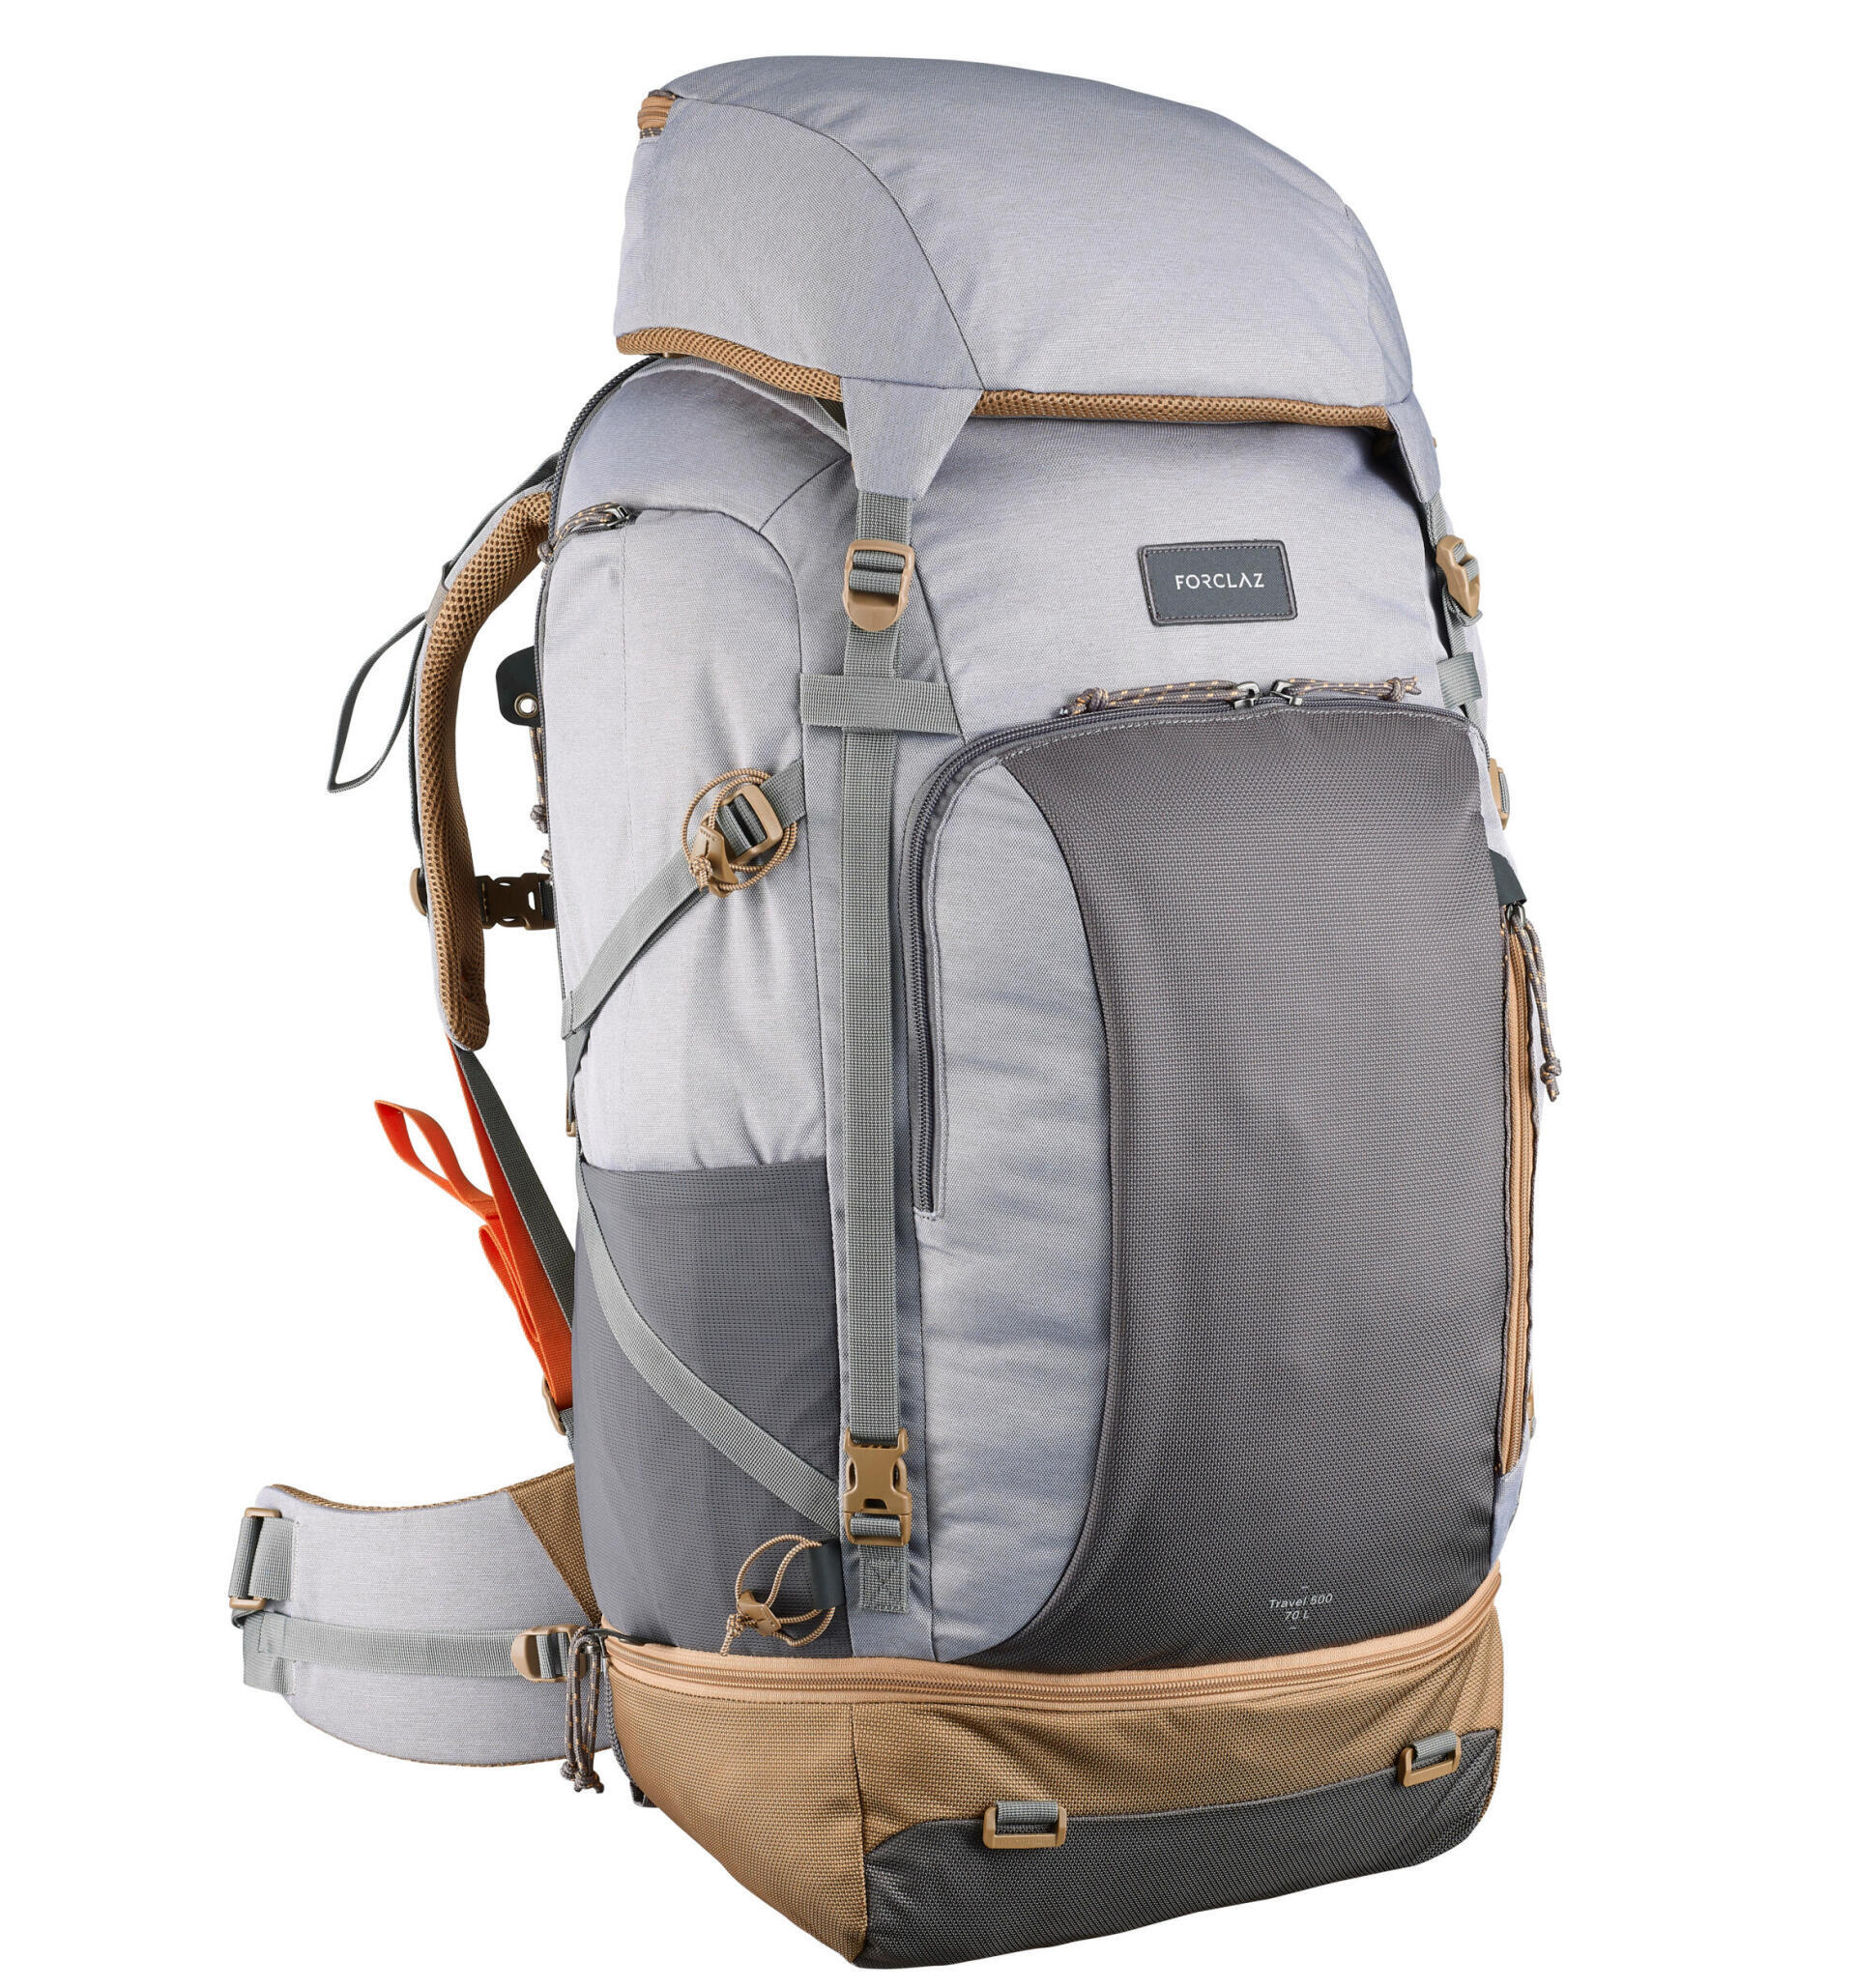 Women's Travel Backpack 50 L - Travel 500